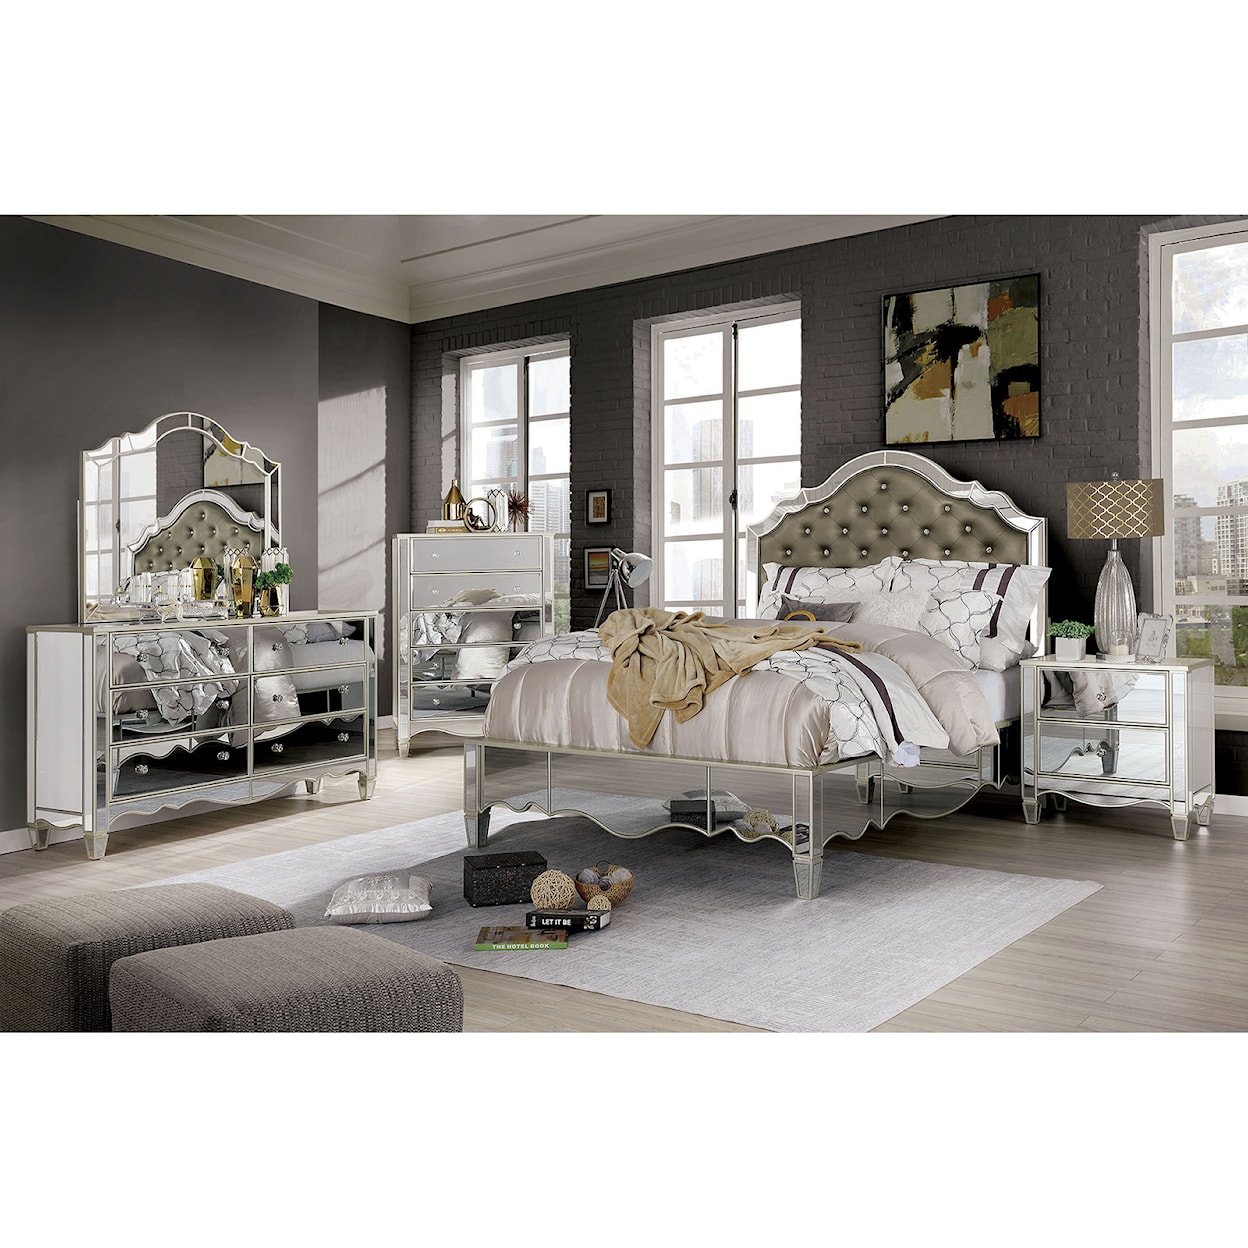 Furniture of America Eliora 5-Piece Queen Bedroom Set